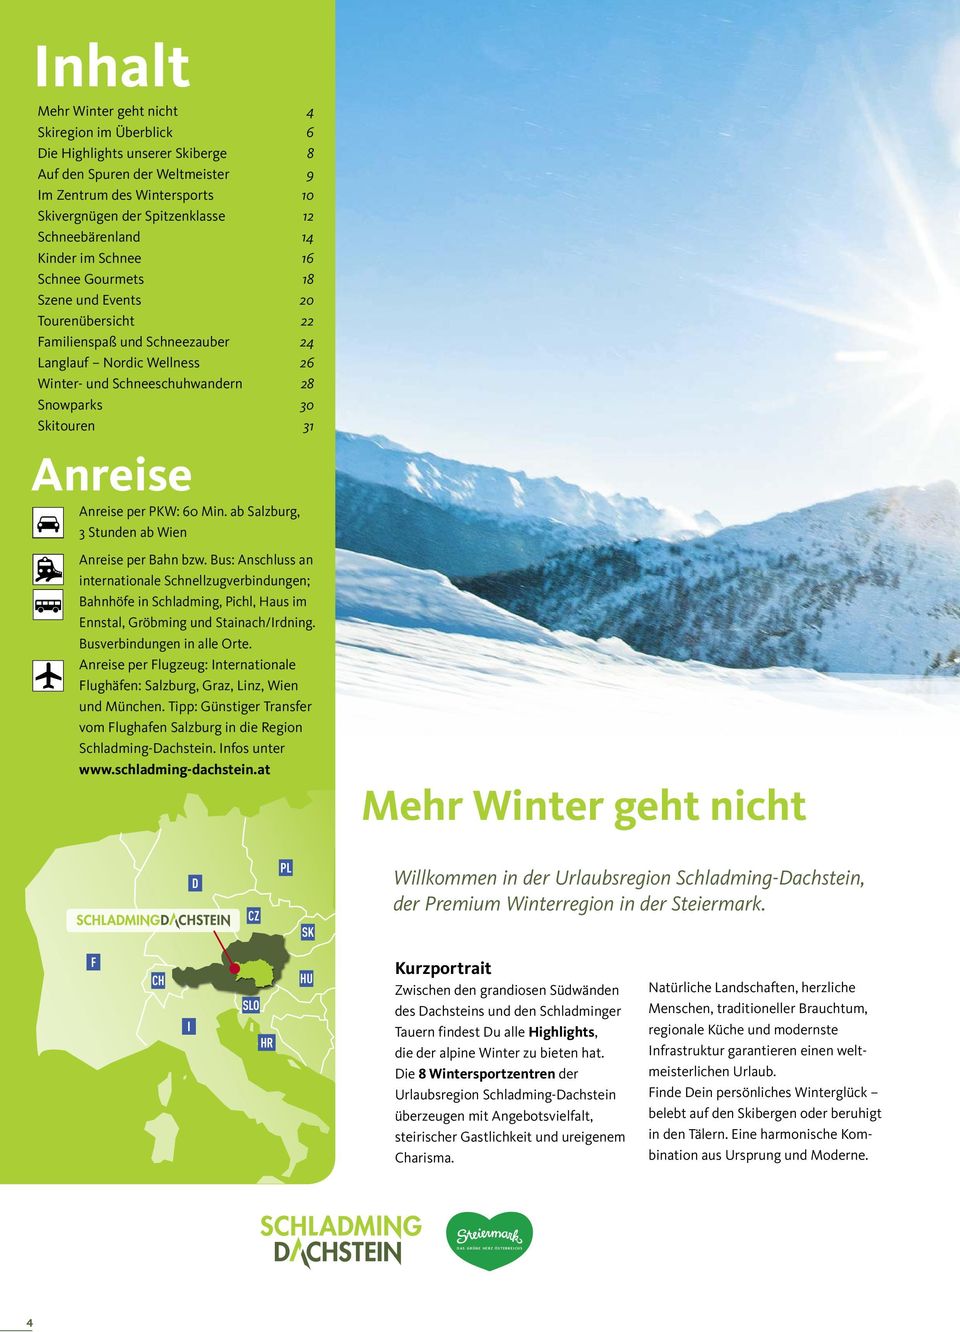 Snowparks 30 Skitouren 31 Anreise Anreise per PKW: 60 Min. ab Salzburg, 3 Stunden ab Wien Anreise per Bahn bzw.